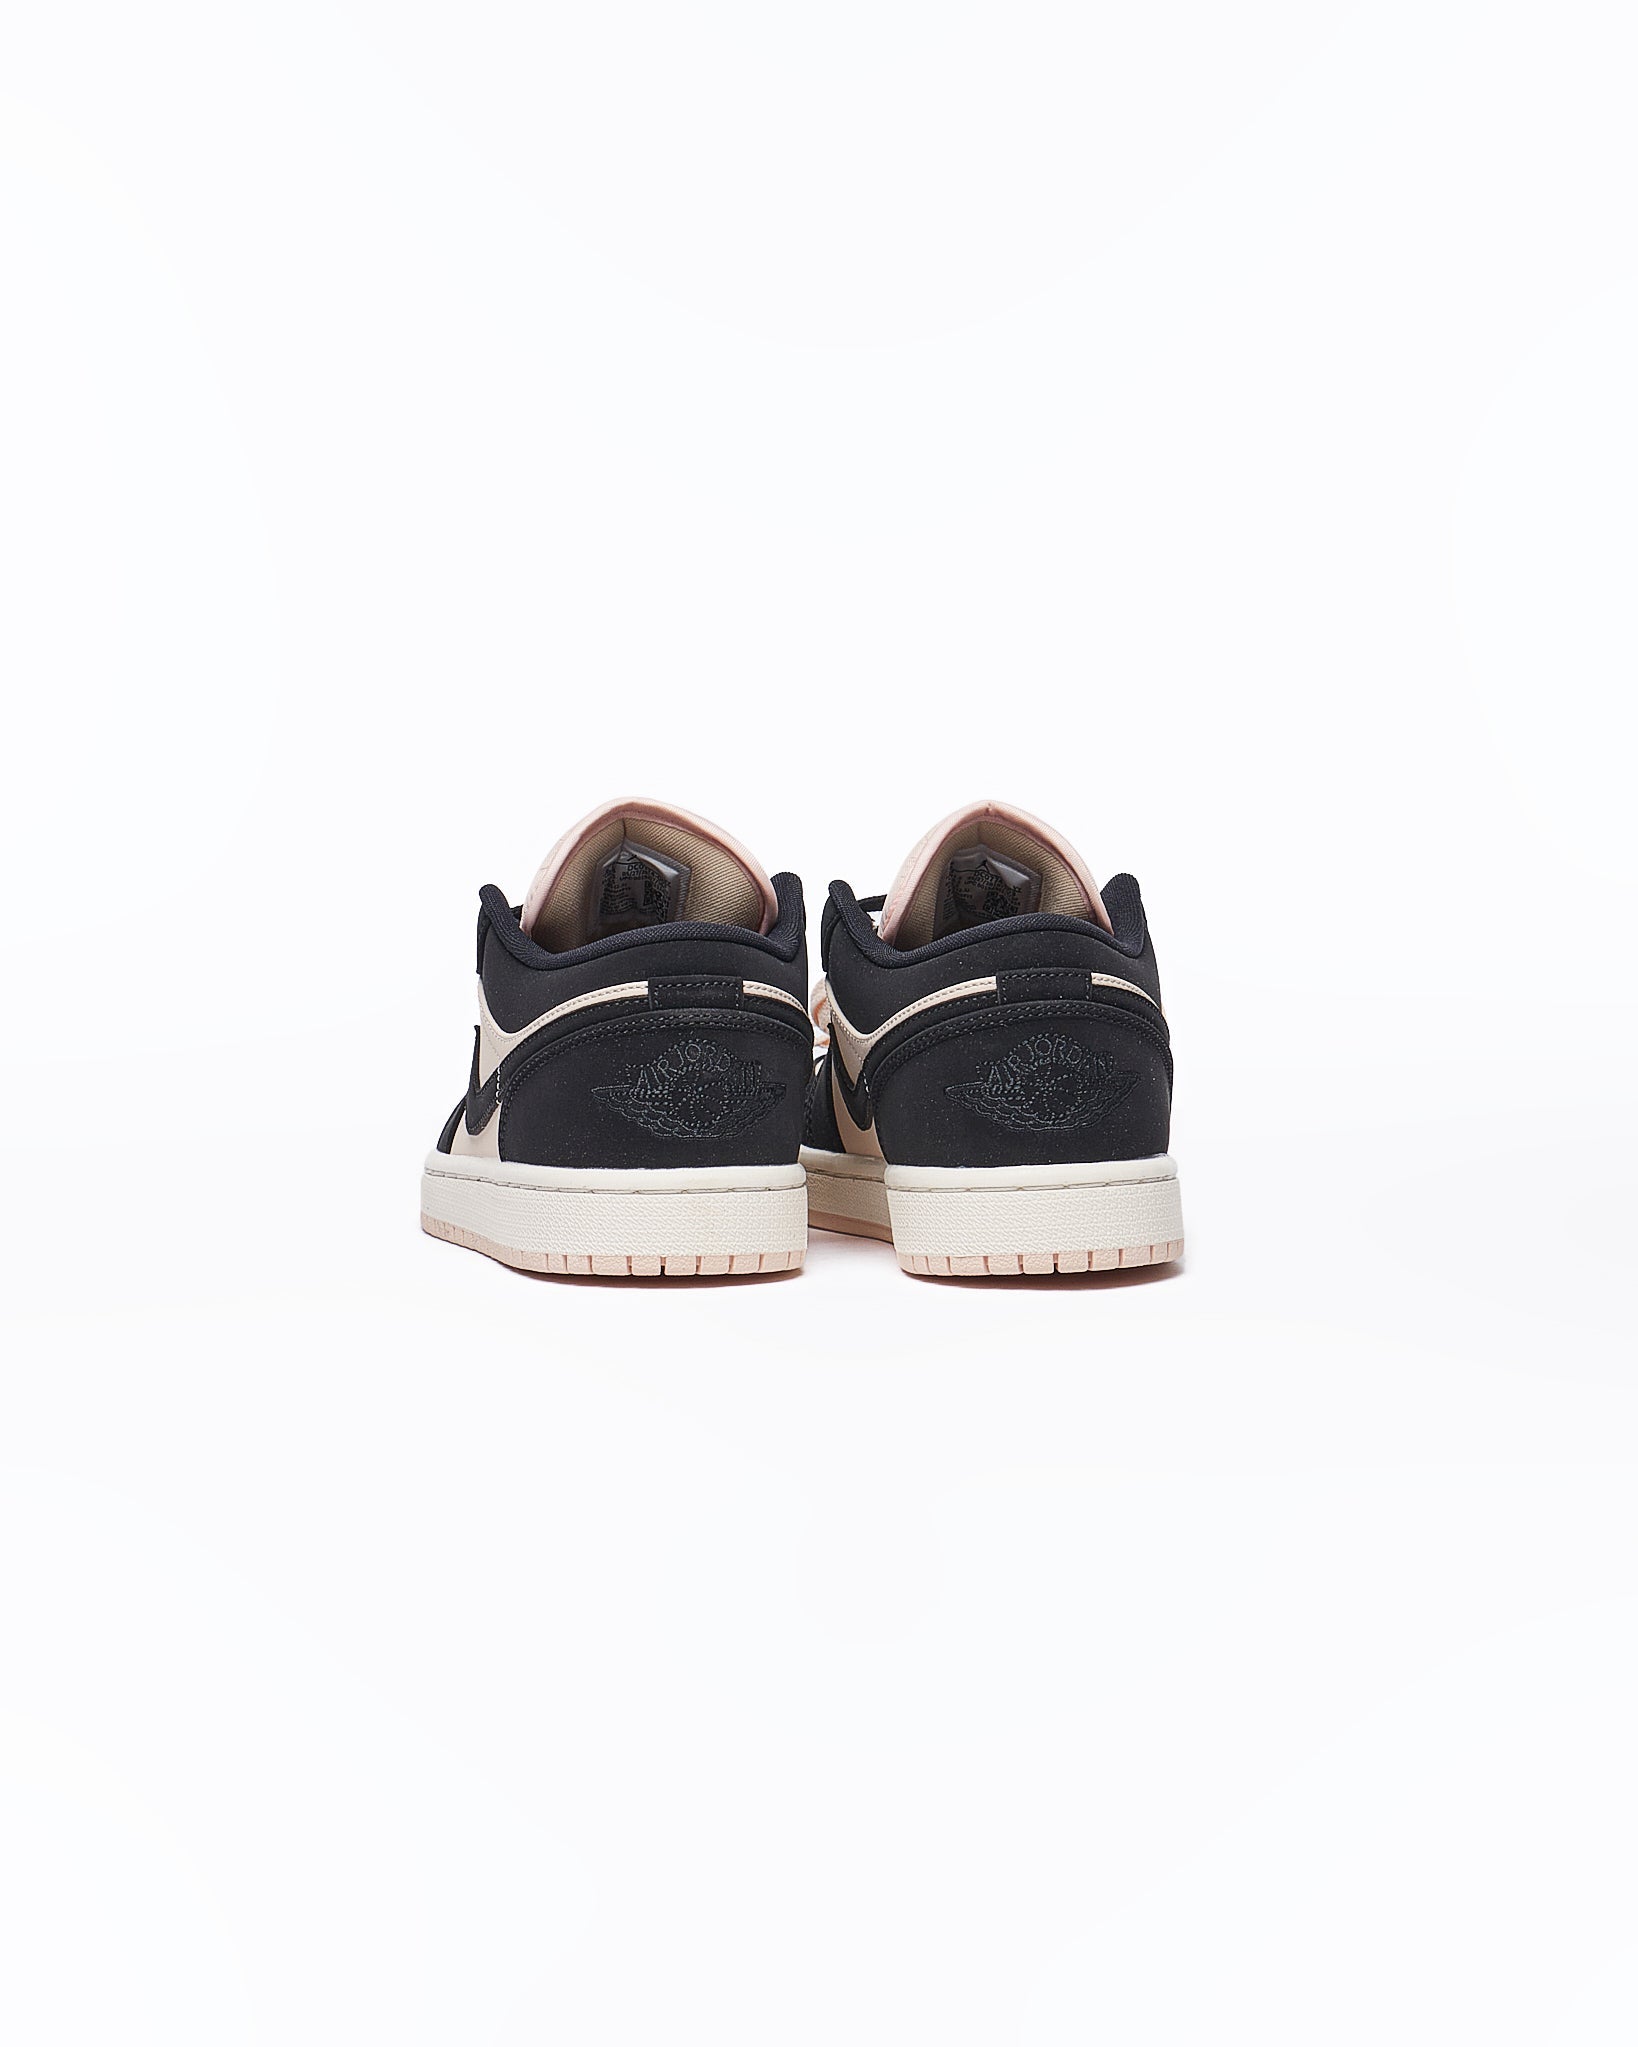 MOI OUTFIT-NIK Air Jordan Low Black Pink Sneakers Shoes 74.90